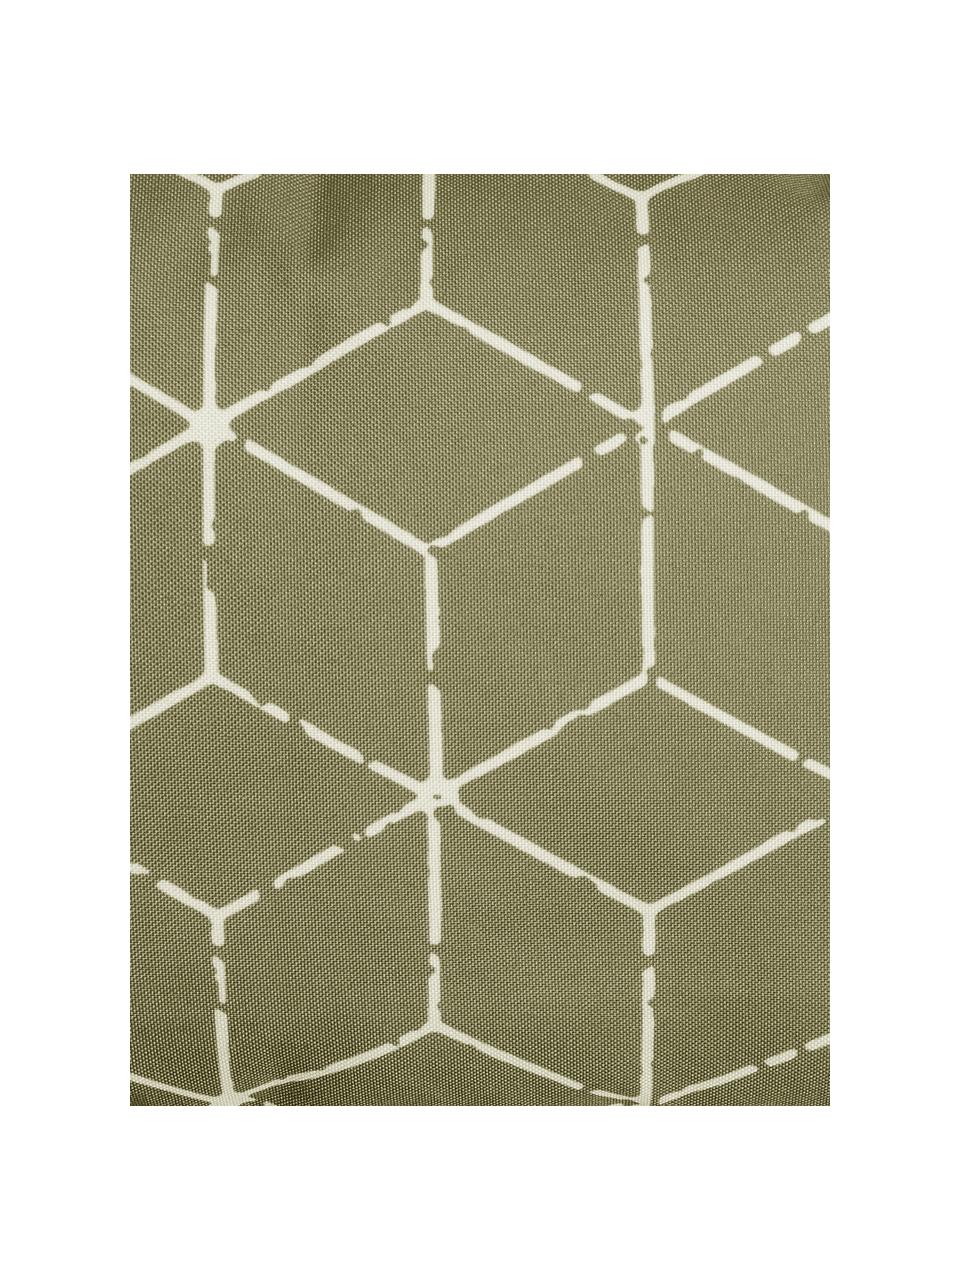 Outdoor-Kissen Cube mit grafischem Muster in Grün/Weiß, mit Inlett, 100% Polyester, Taupe, Weiß, 30 x 50 cm